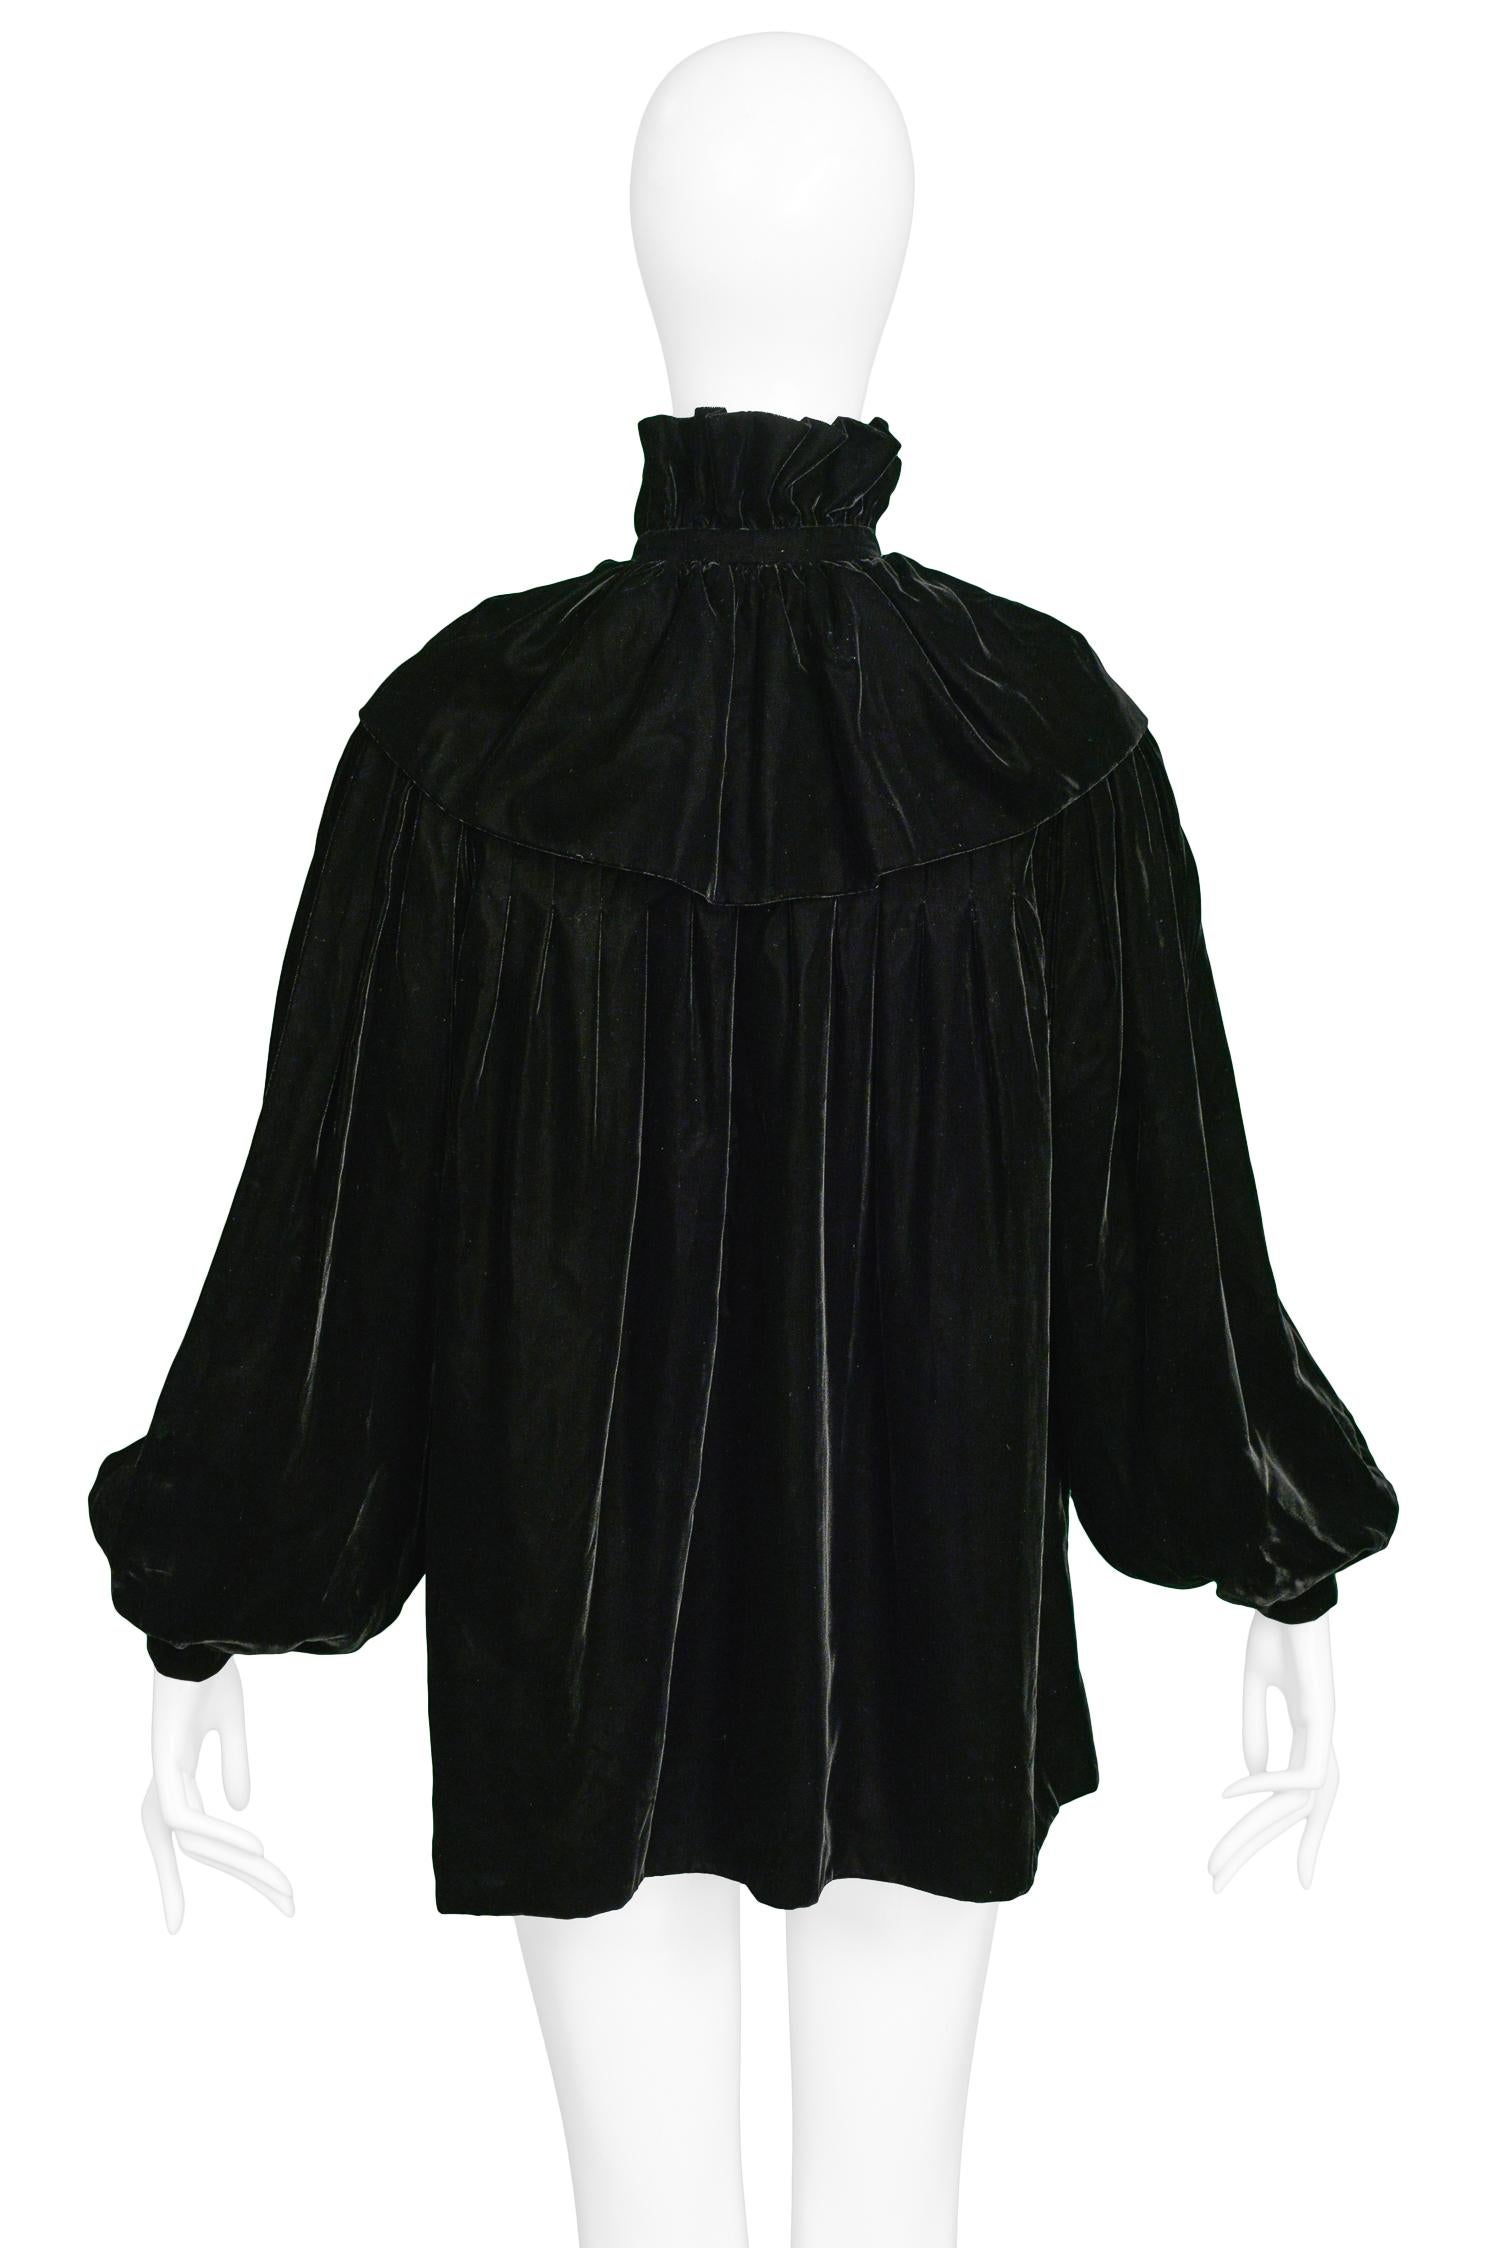 Women's or Men's Vintage Yves Saint Laurent Black Velvet Cloak